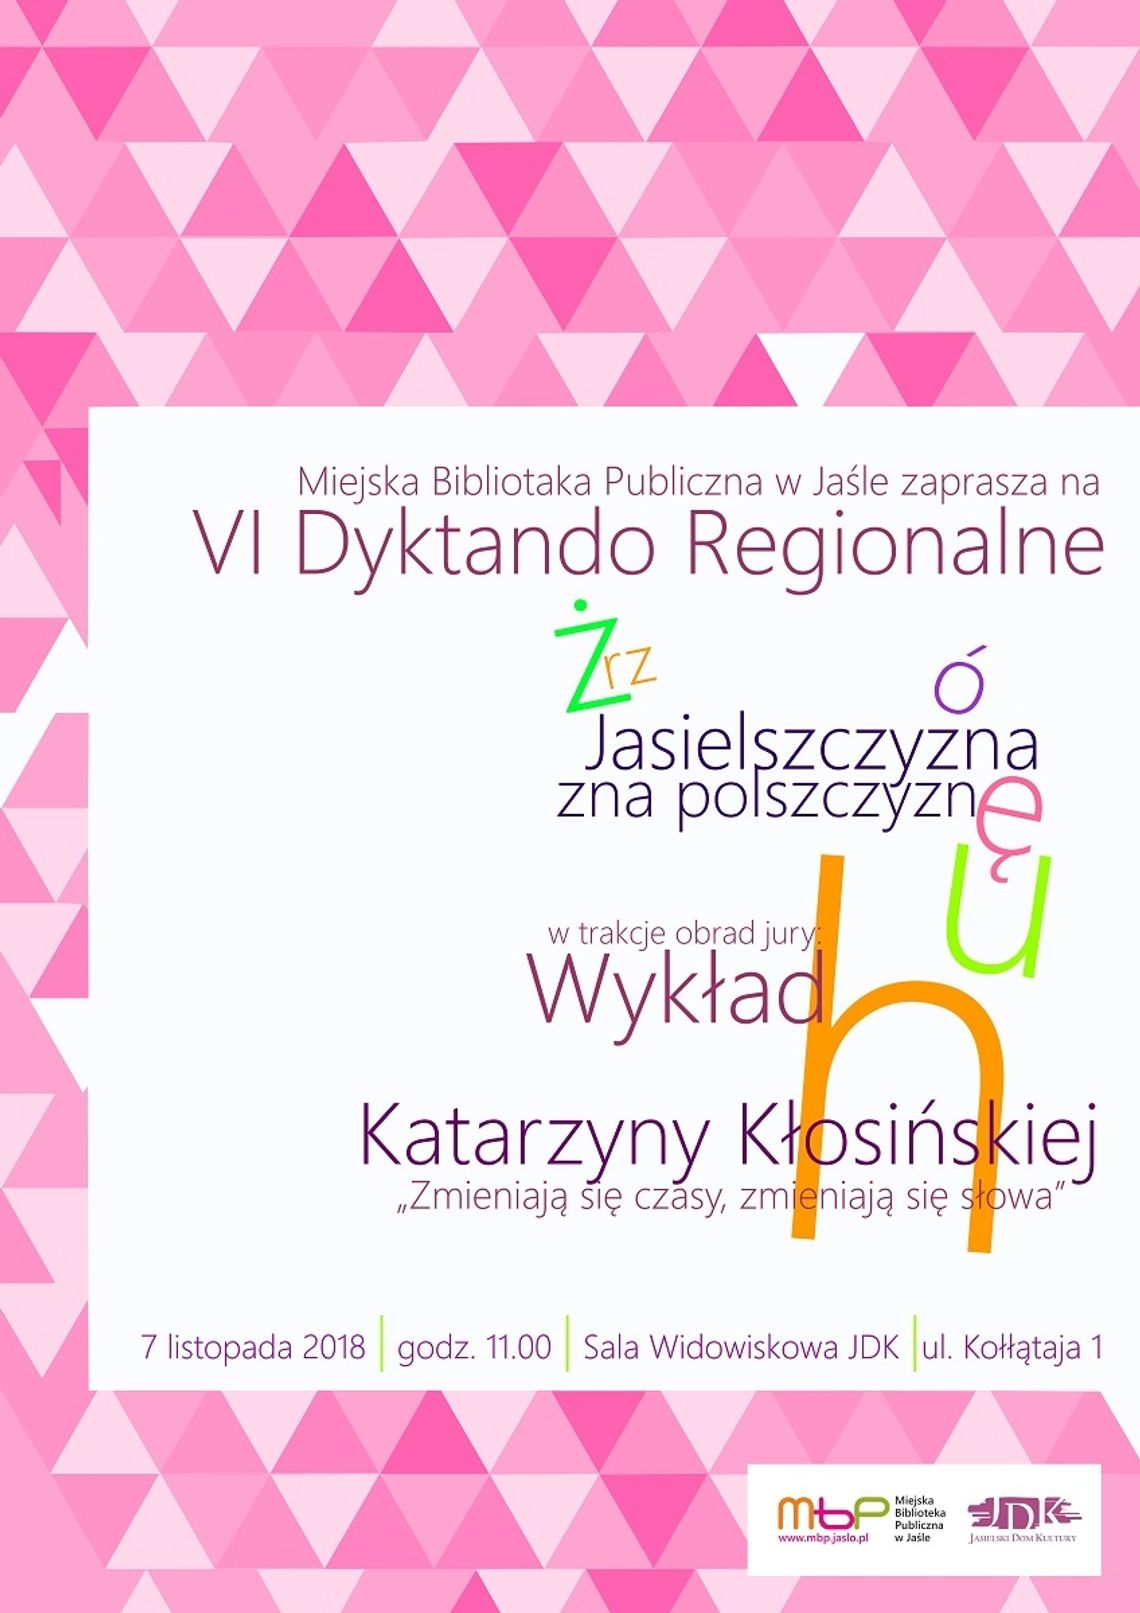  VI dyktando regionalne w MBP w Jaśle